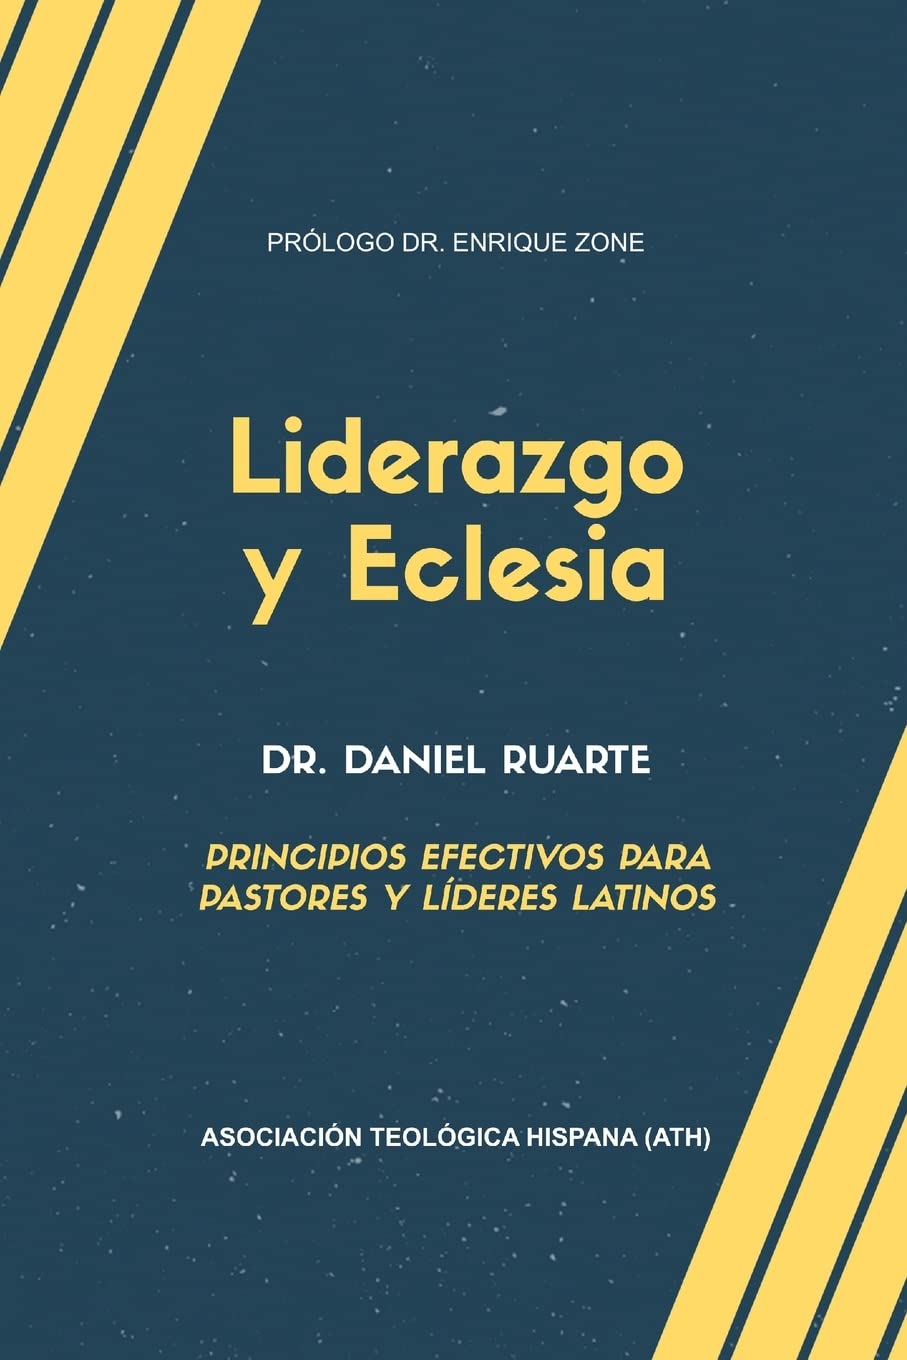 Liderazgo y Eclesia: Principios efectivos para pastores y líderes latinos AUTOGRAFIADO by Dr. Daniel Ruarte (Spanish Edition) Paperback – May 7, 2019